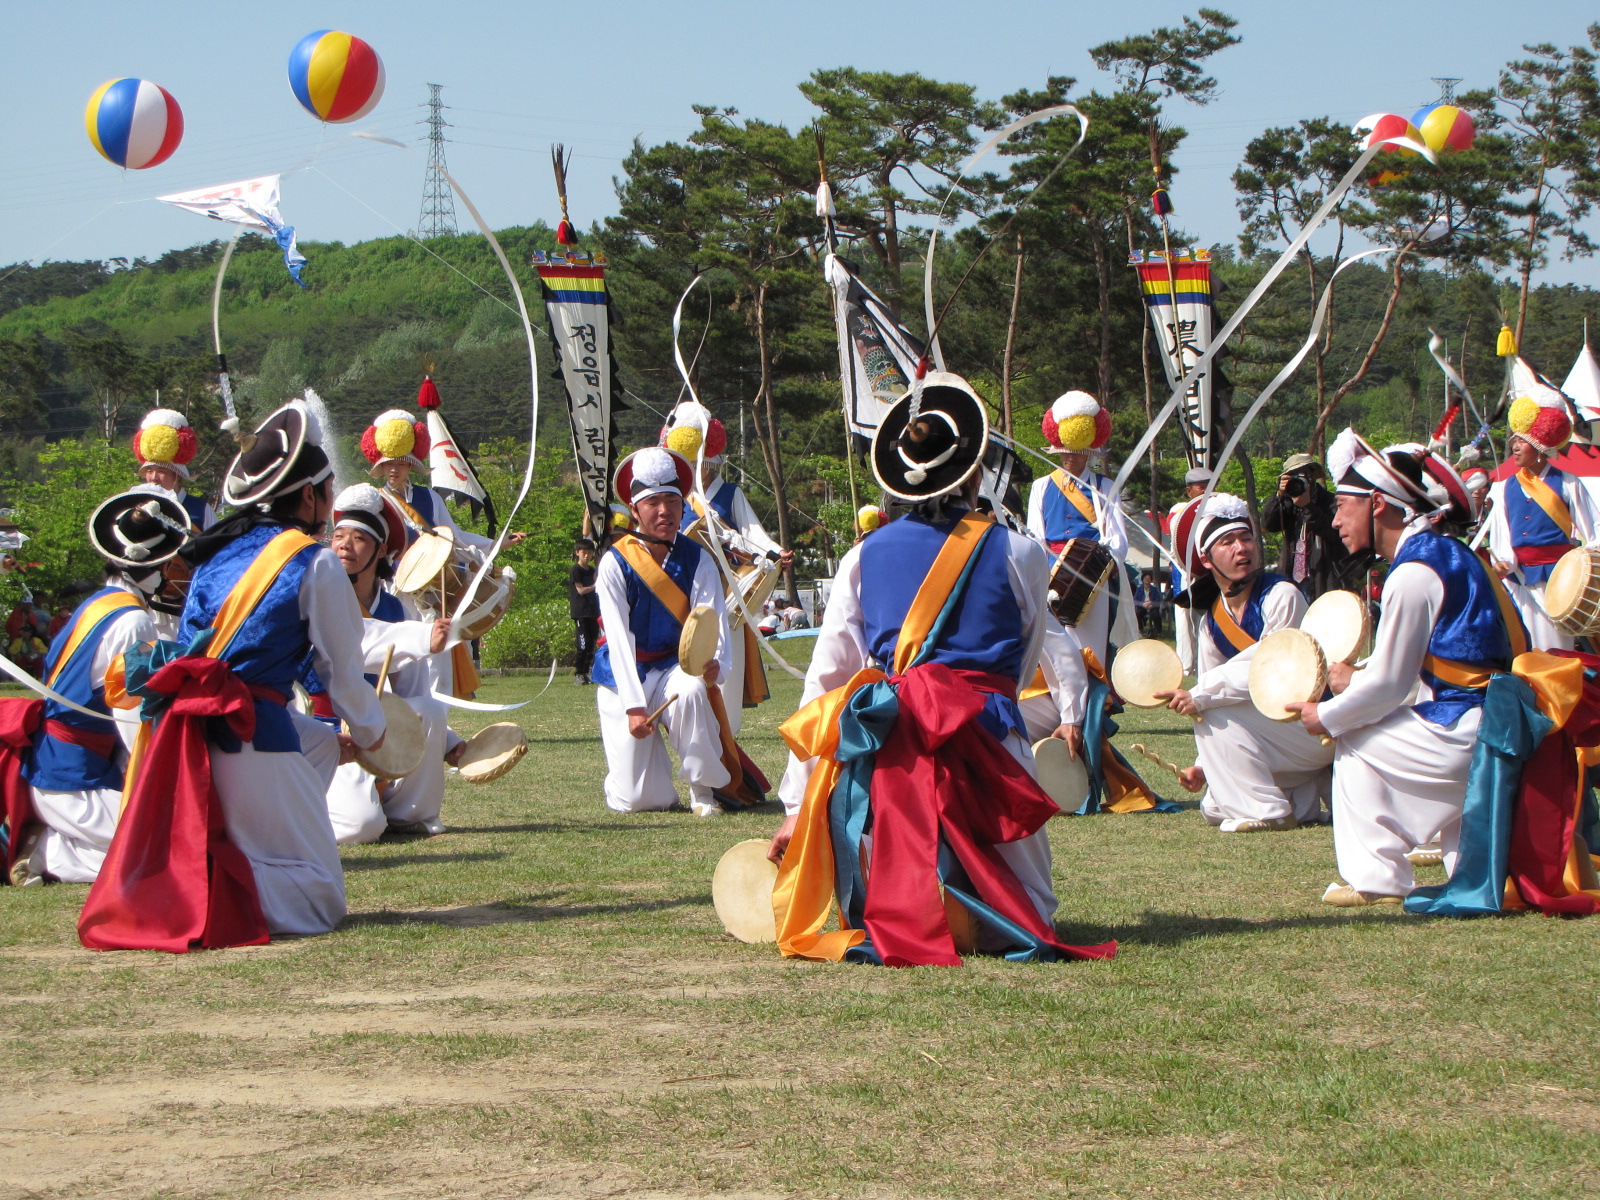 2012 전북민속예술축제